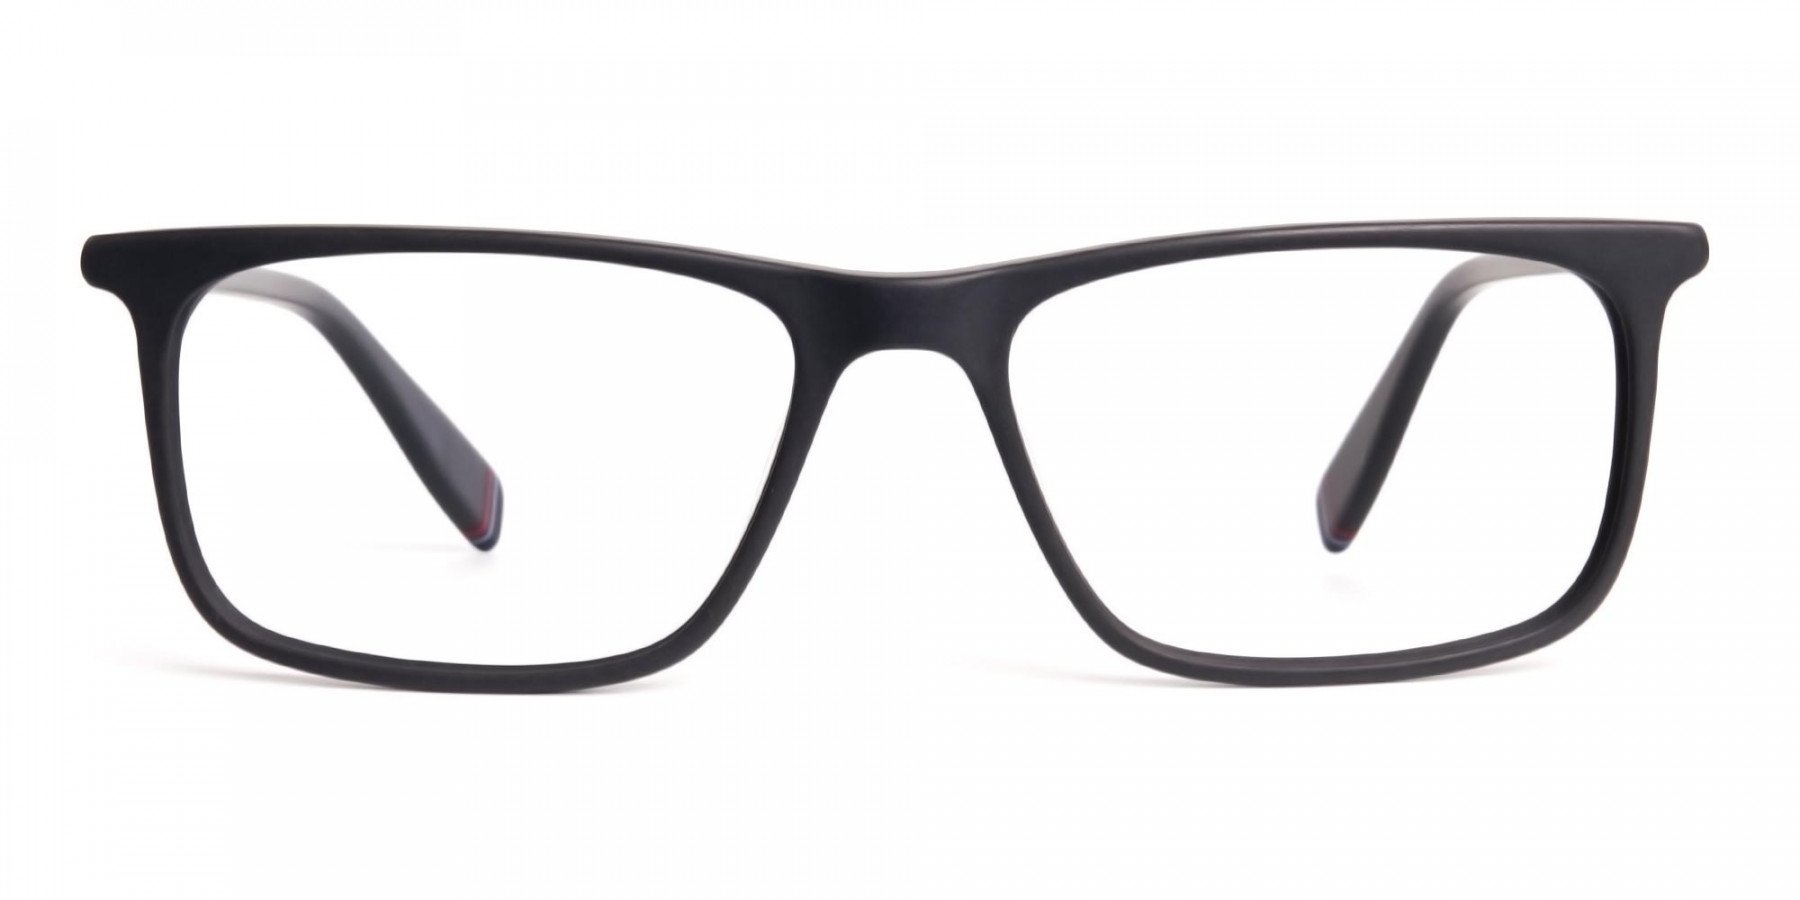 matte-black-glasses-rectangular-shape-frames-1